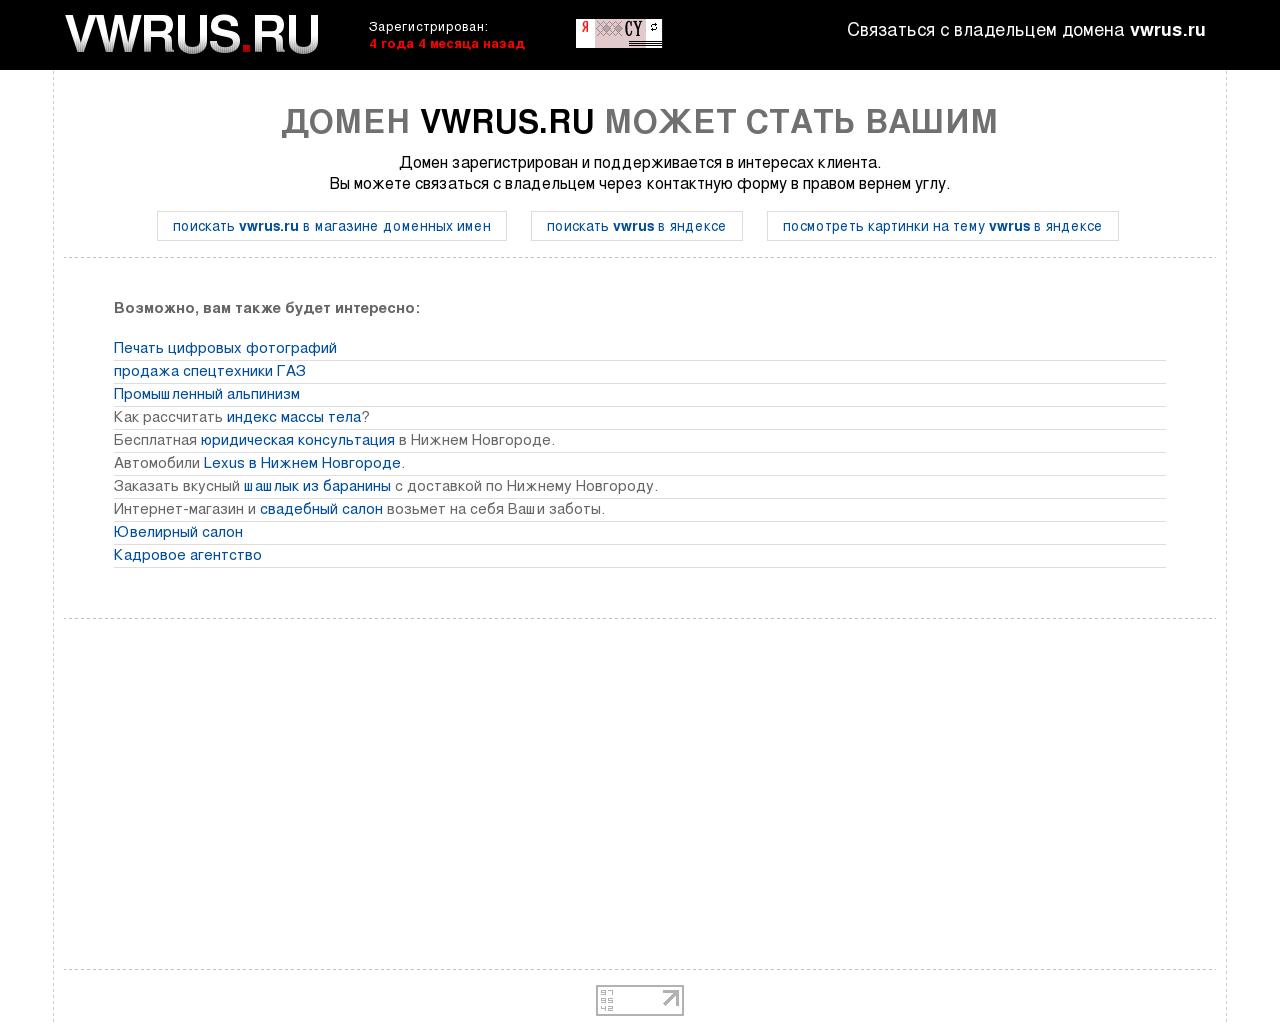 Изображение сайта vwrus.ru в разрешении 1280x1024